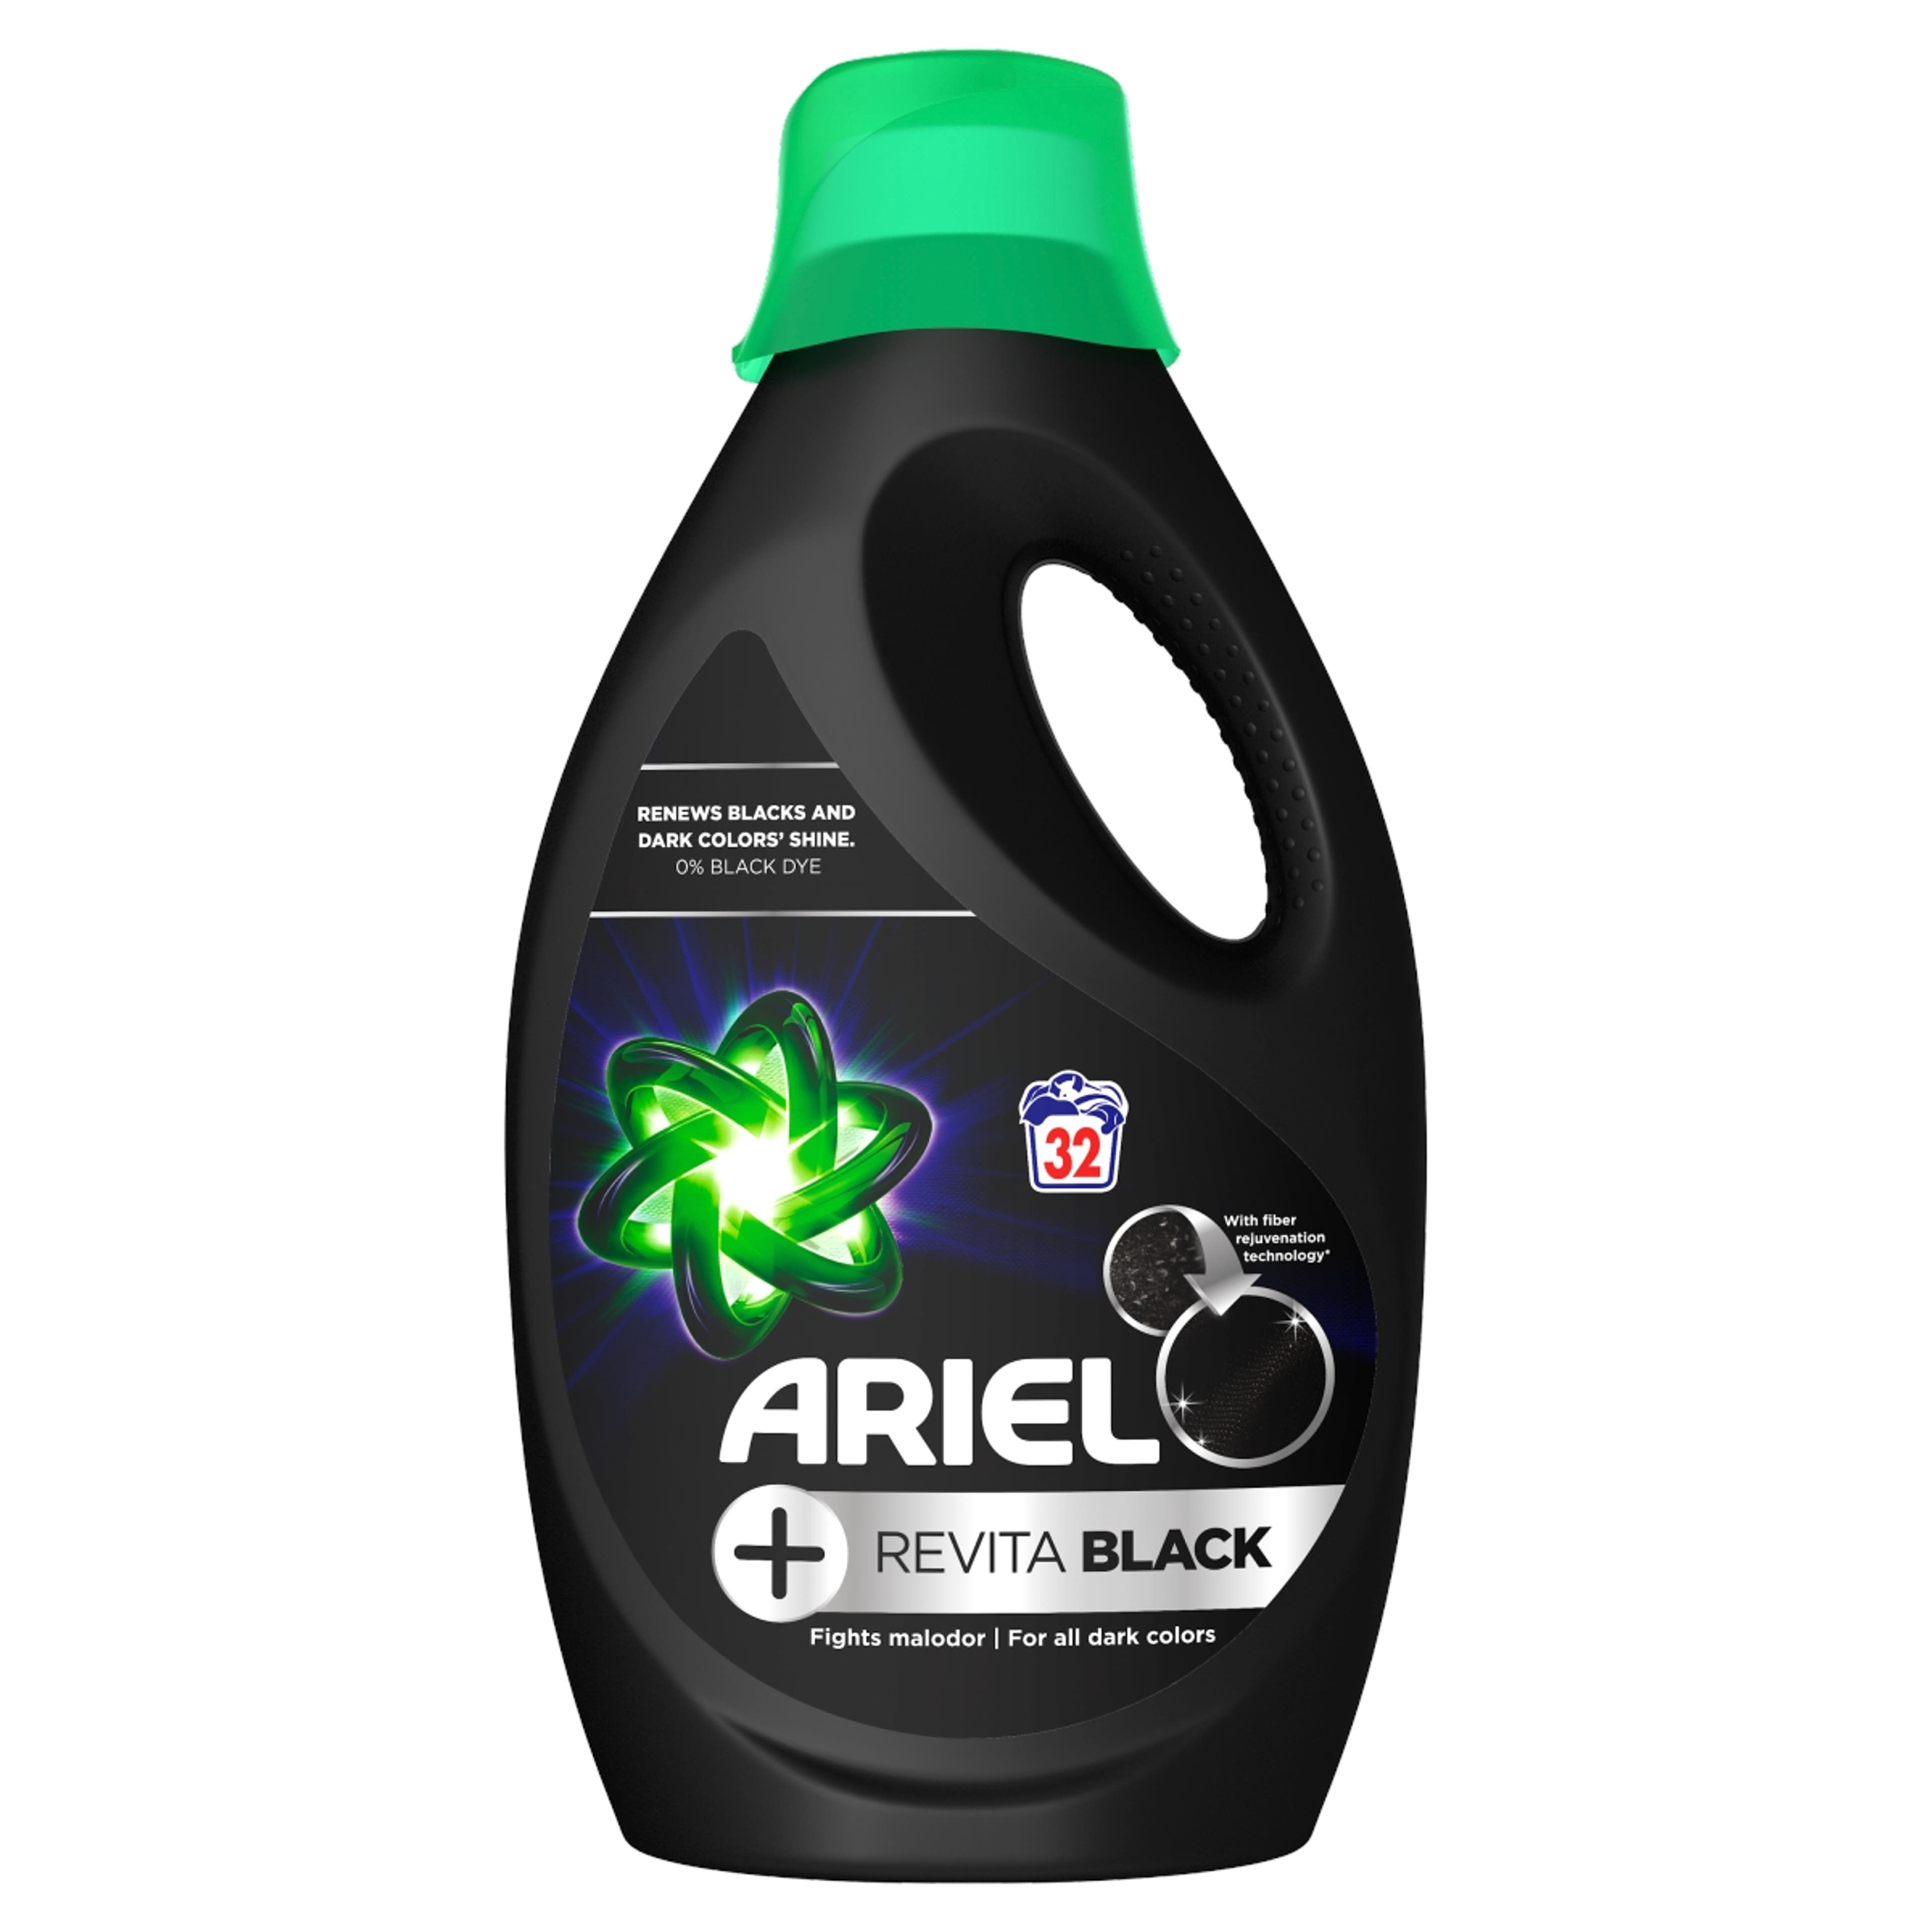 Ariel folyékony mosószer black, 32 mosás - 1760 ml